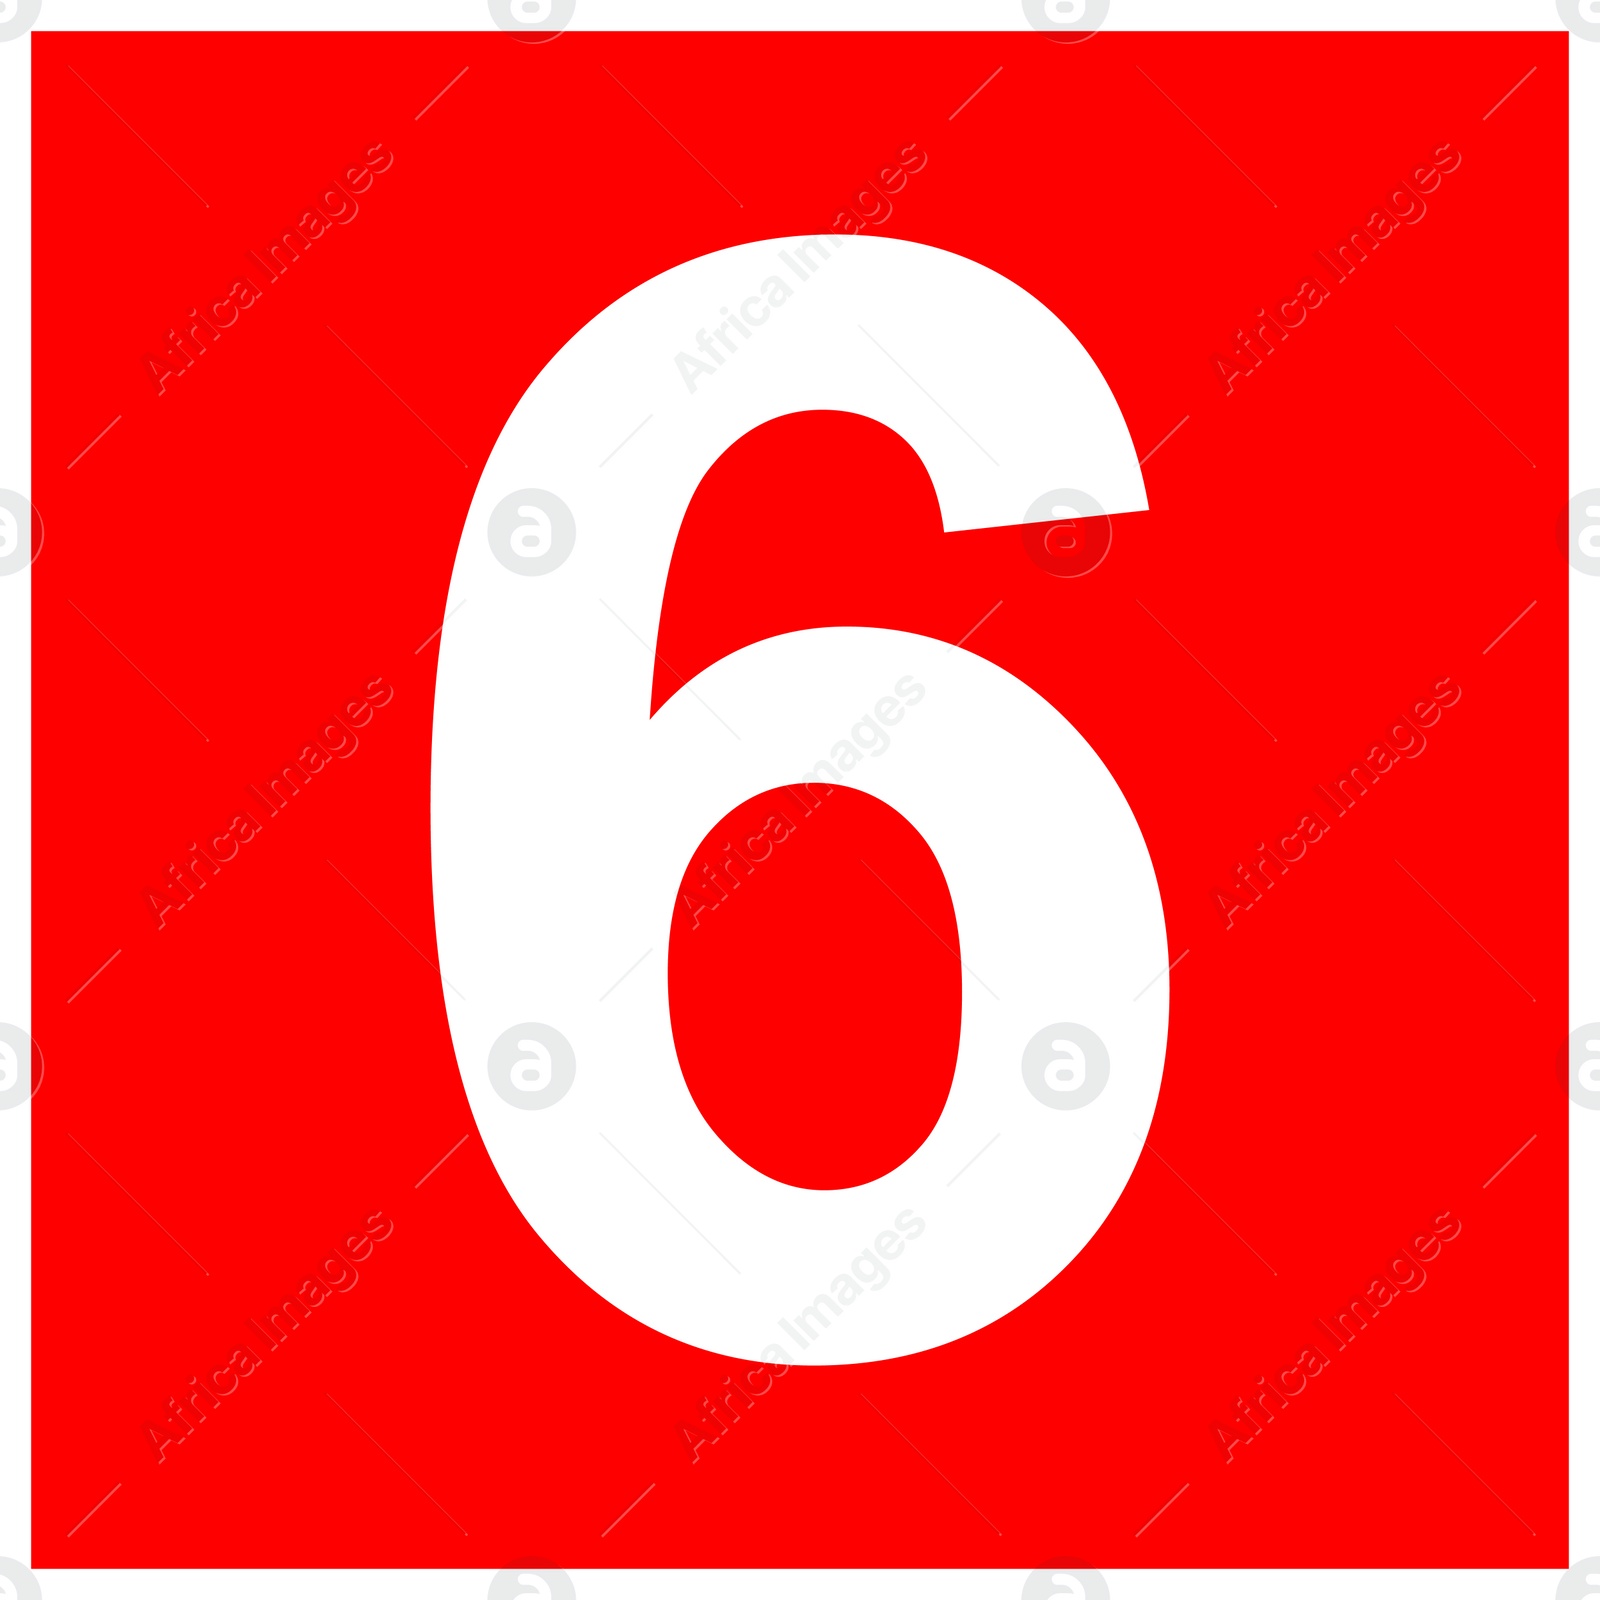 Image of International Maritime Organization (IMO) sign, illustration. Number "6" 